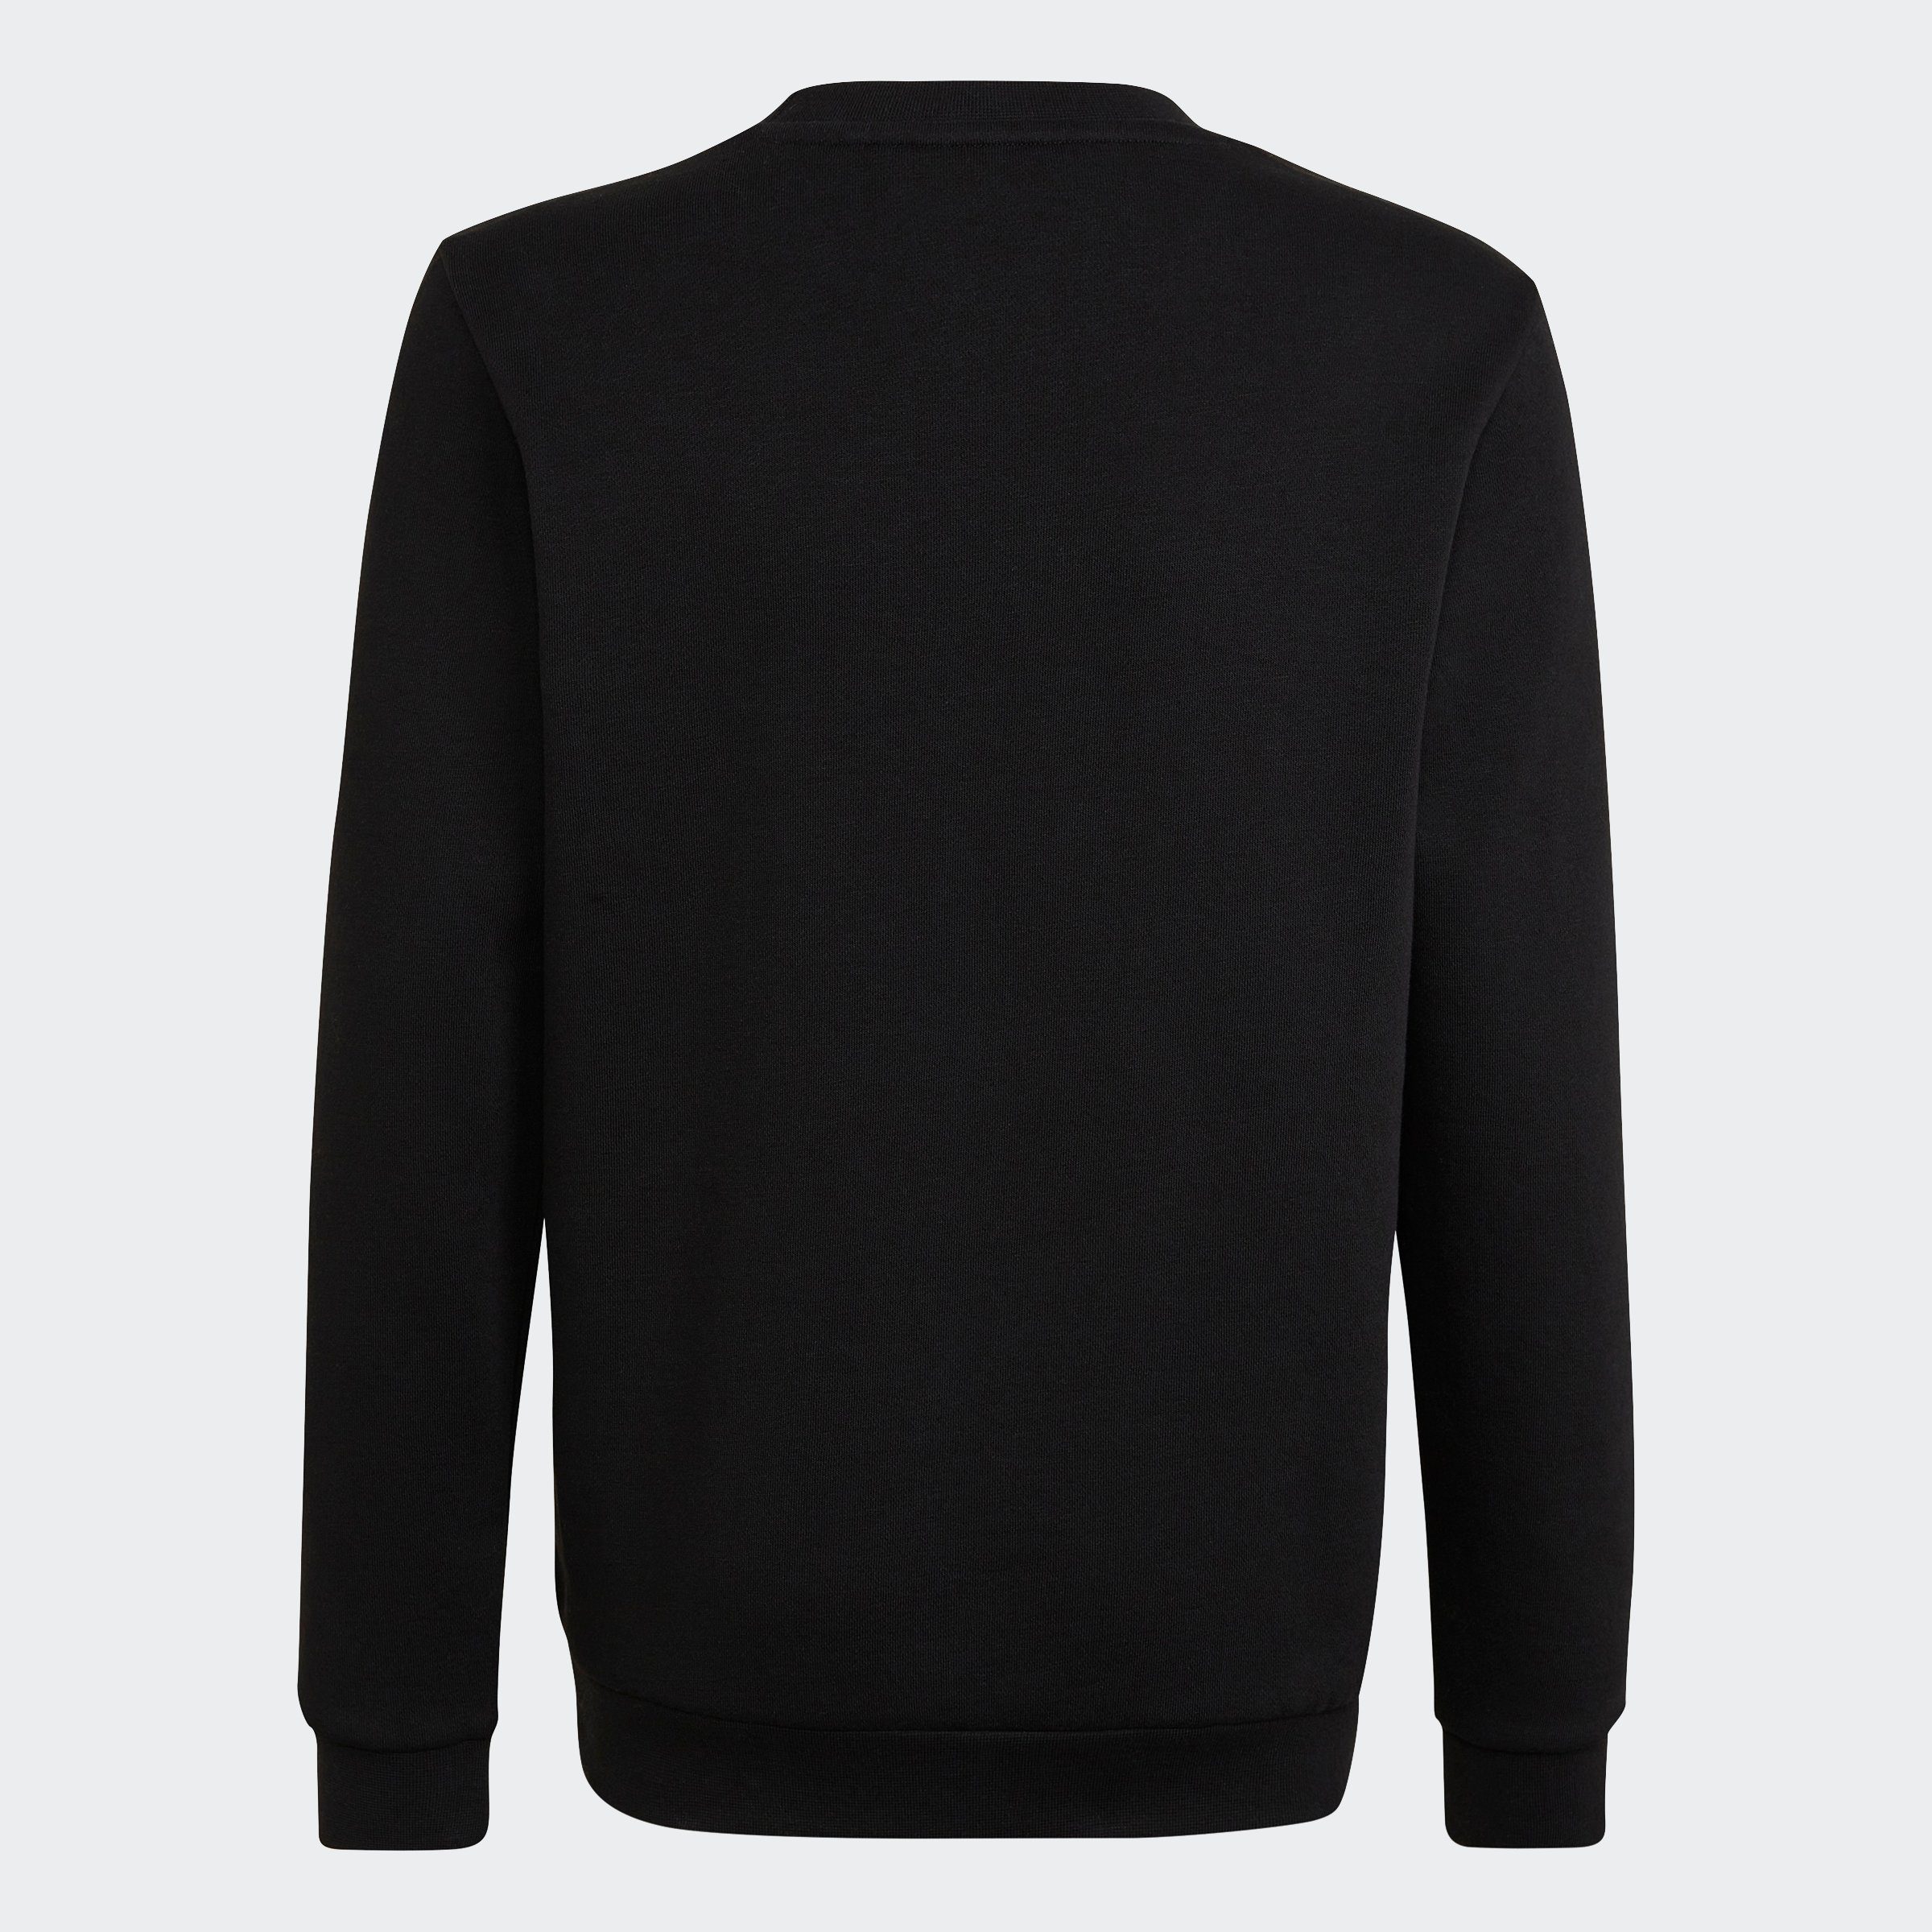 ADICOLOR adidas Originals Sweatshirt Black